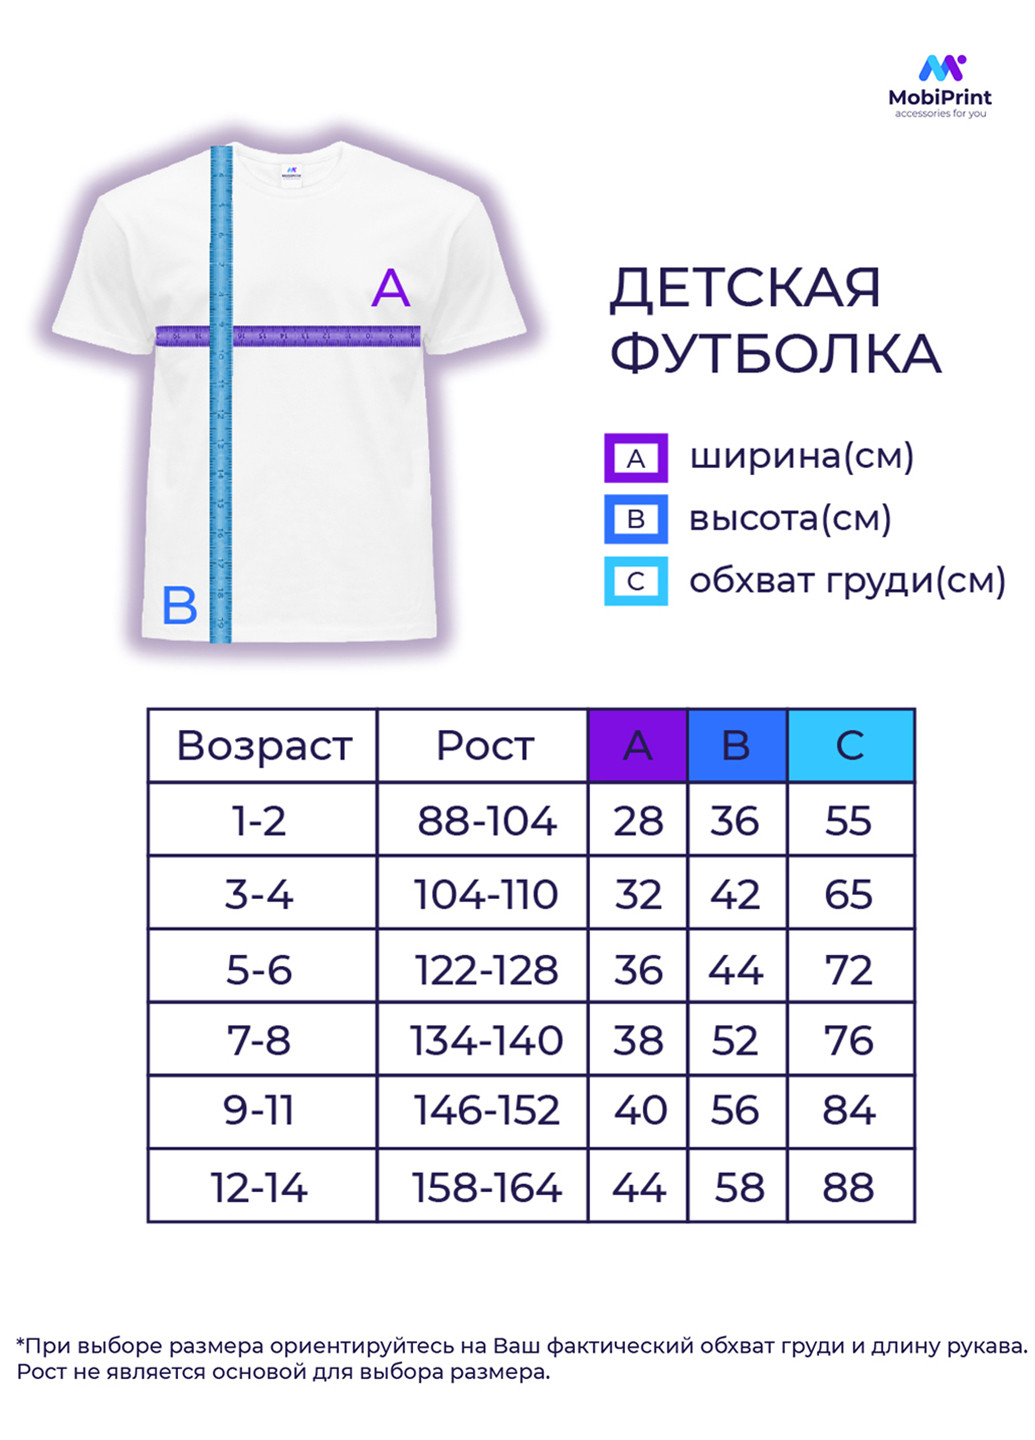 Фіолетова демісезонна футболка дитяча фортнайт (fortnite) (9224-1190) MobiPrint